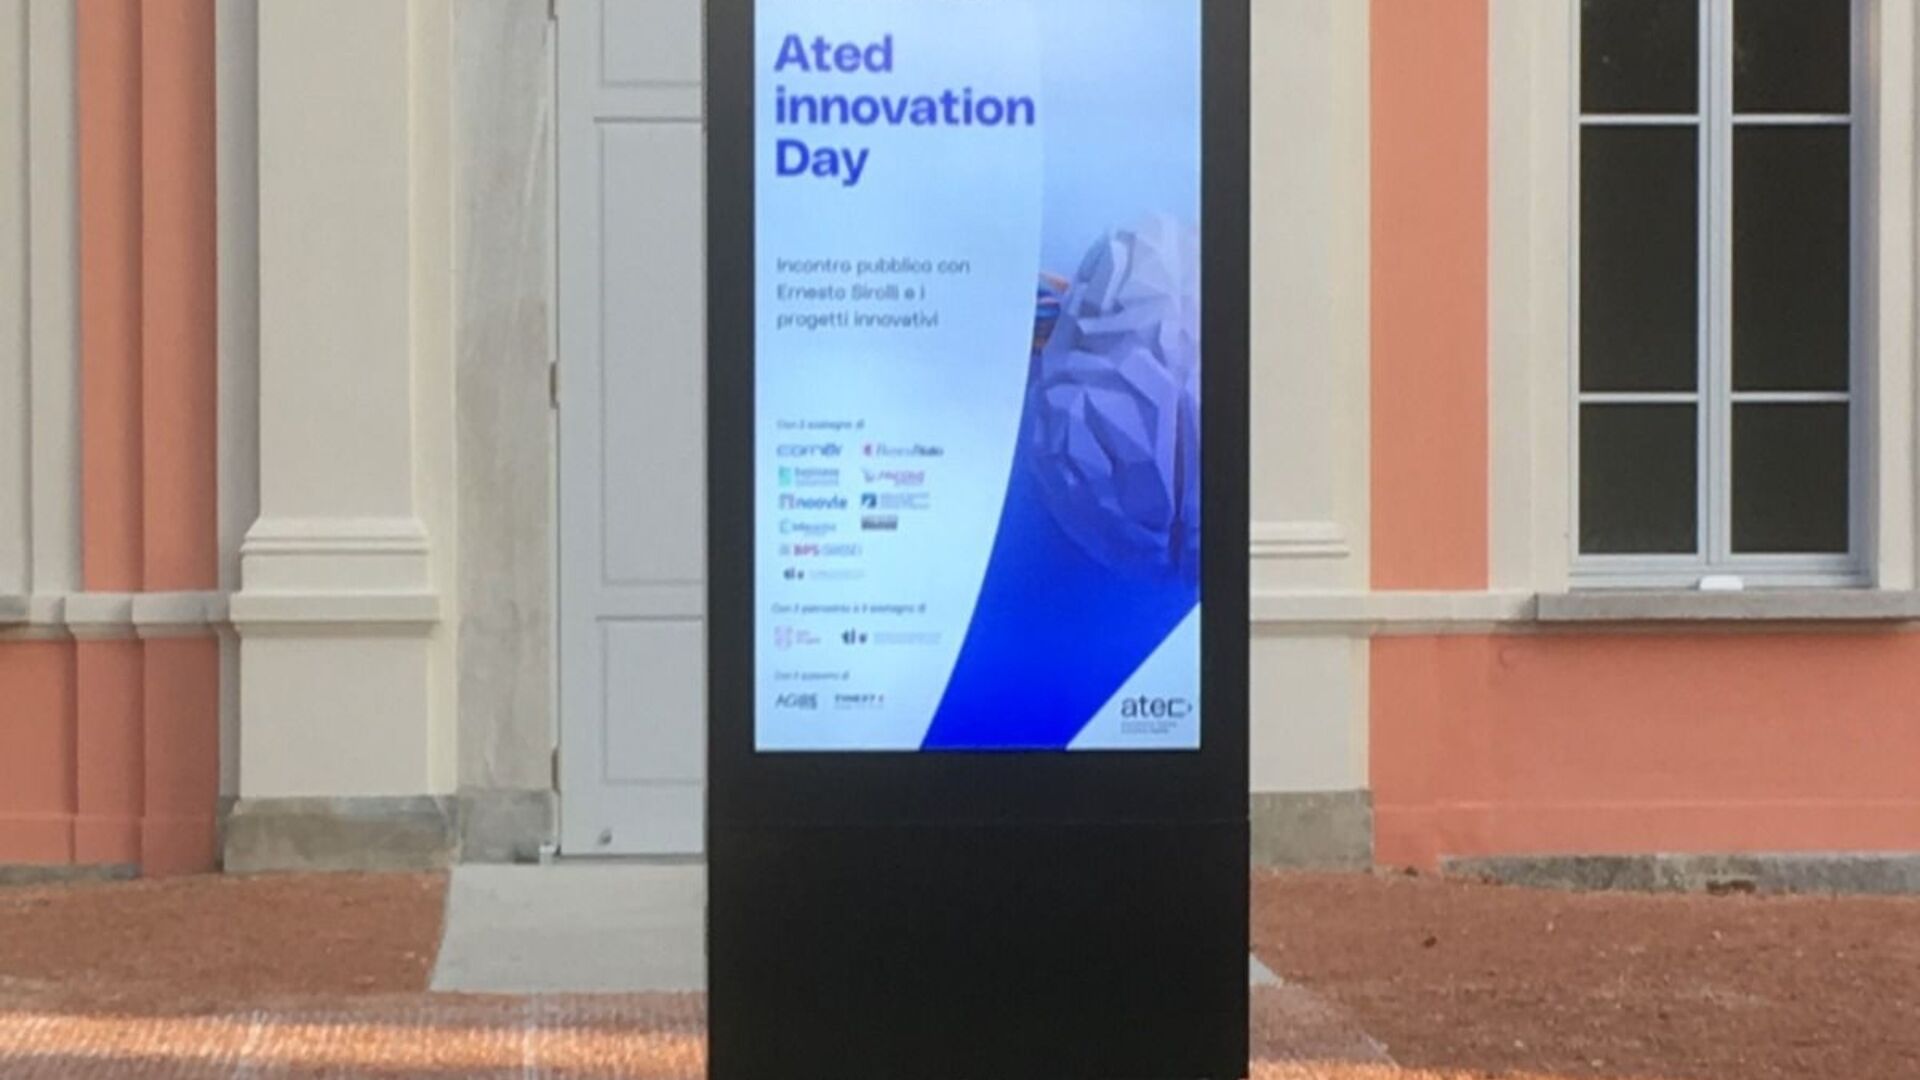 Projektai: ATED projekto inovacijų greičio datos plakatas